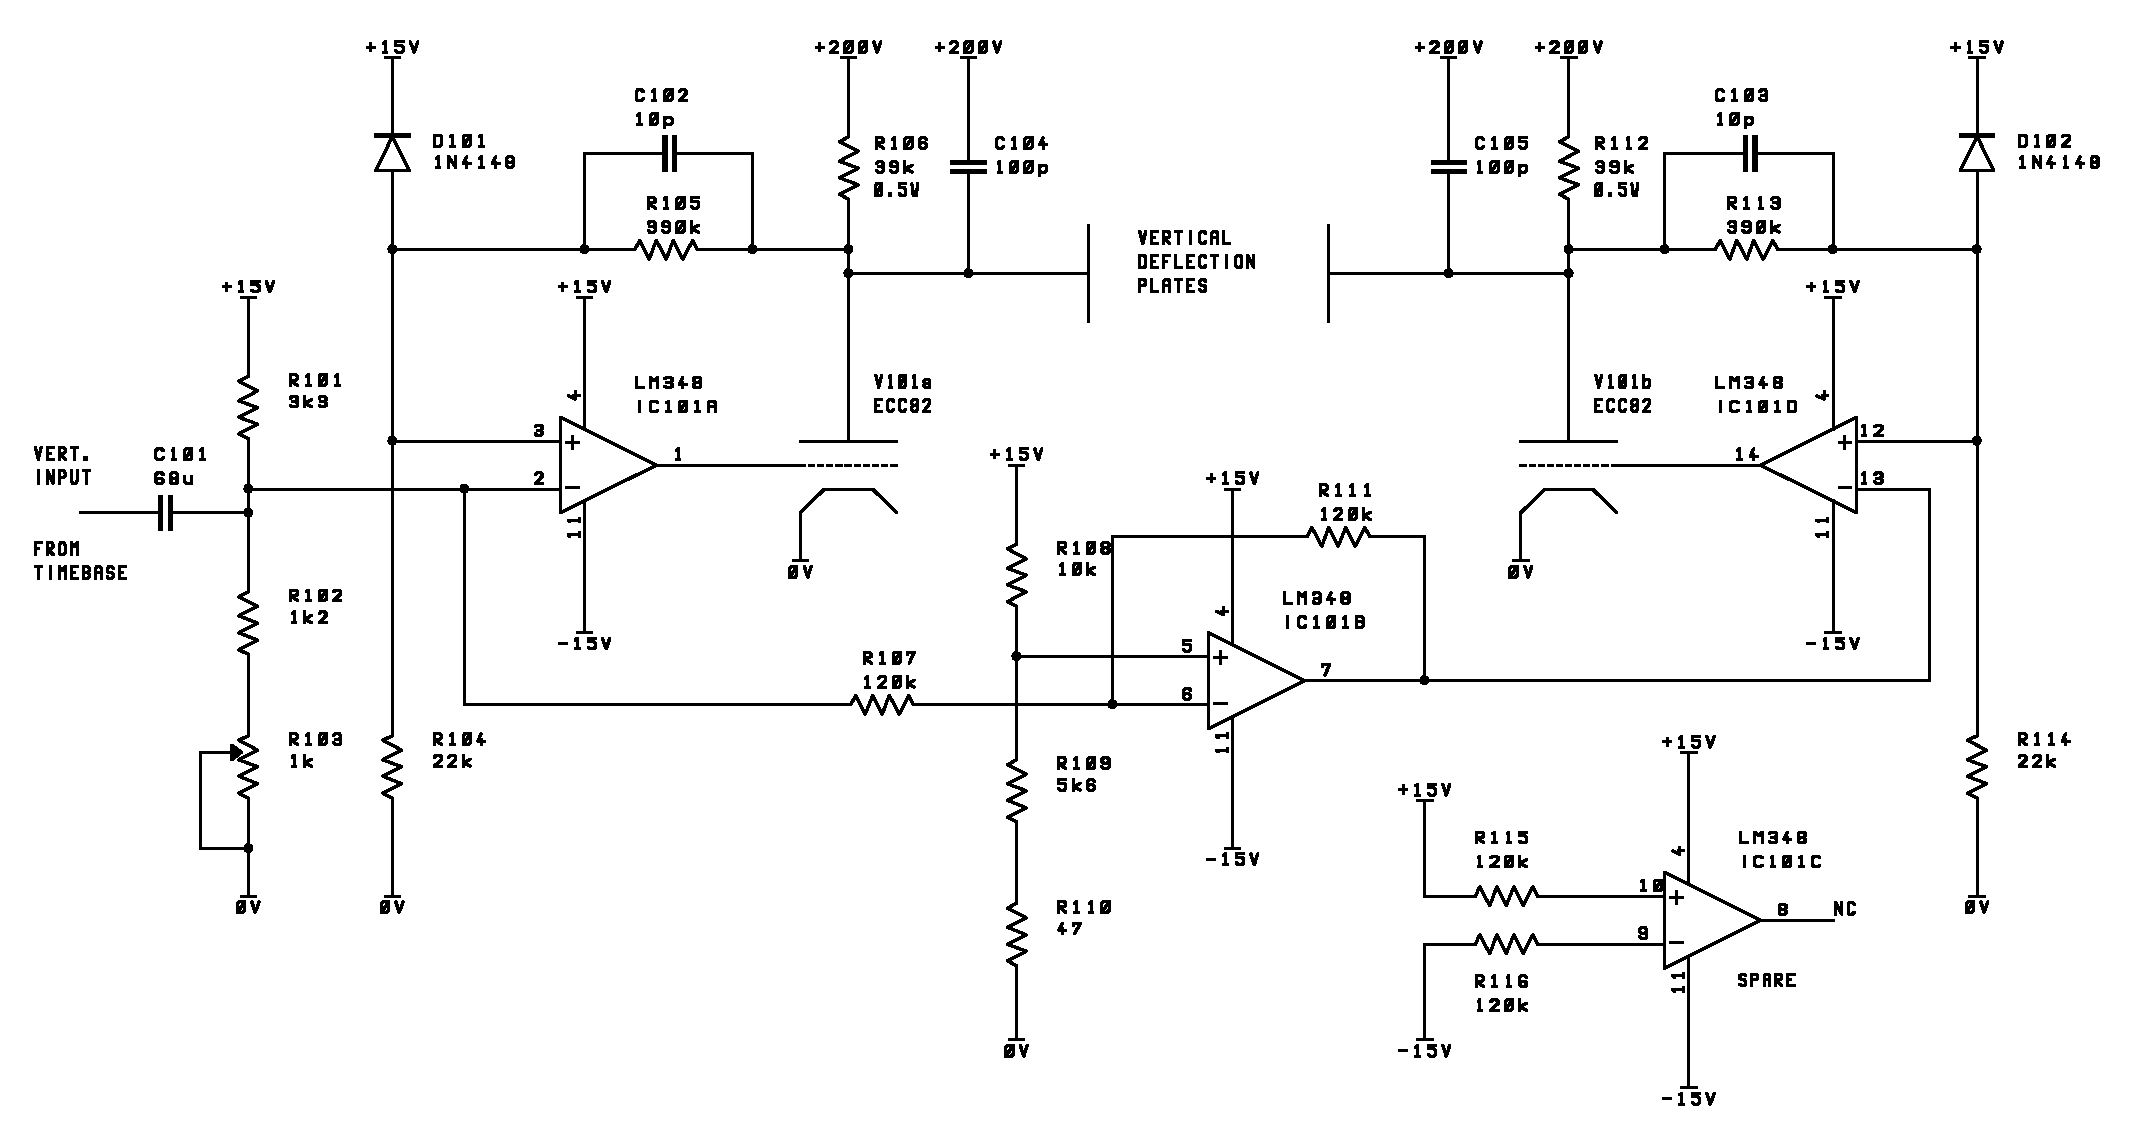 High voltage amplifier schematic using discrete